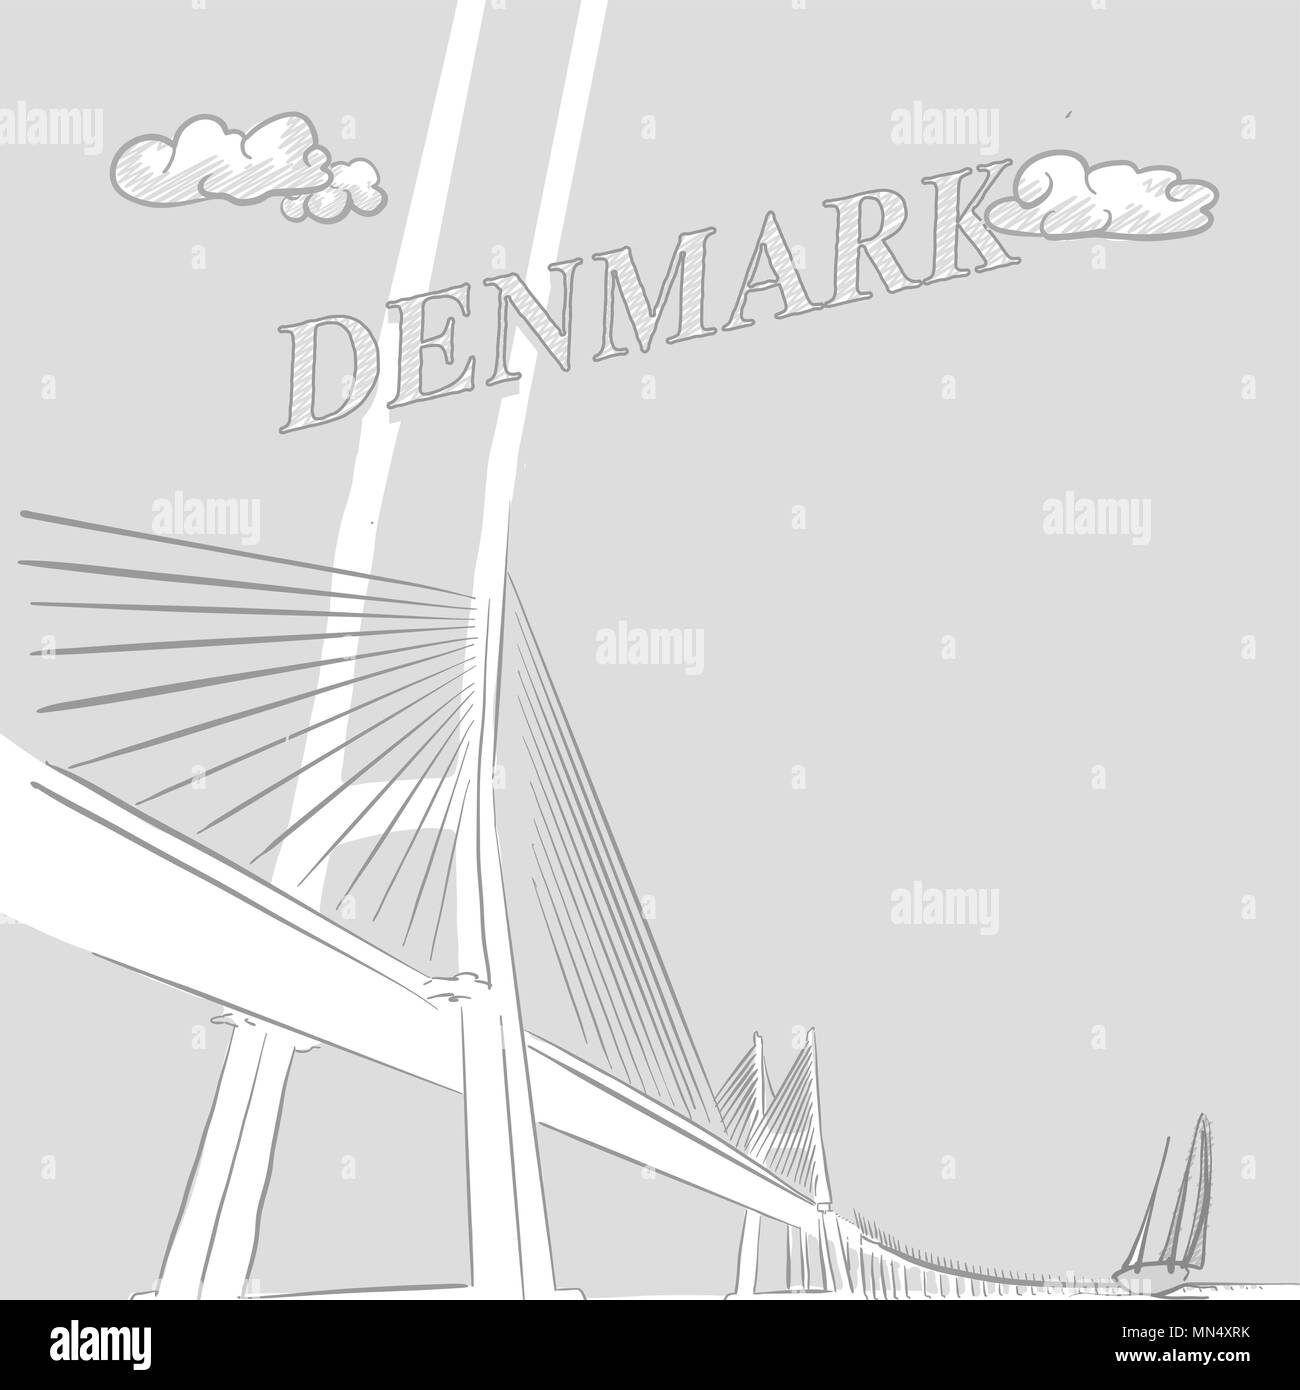 Dinamarca travel marketing, un dibujo vectorial dibujada a mano Ilustración del Vector